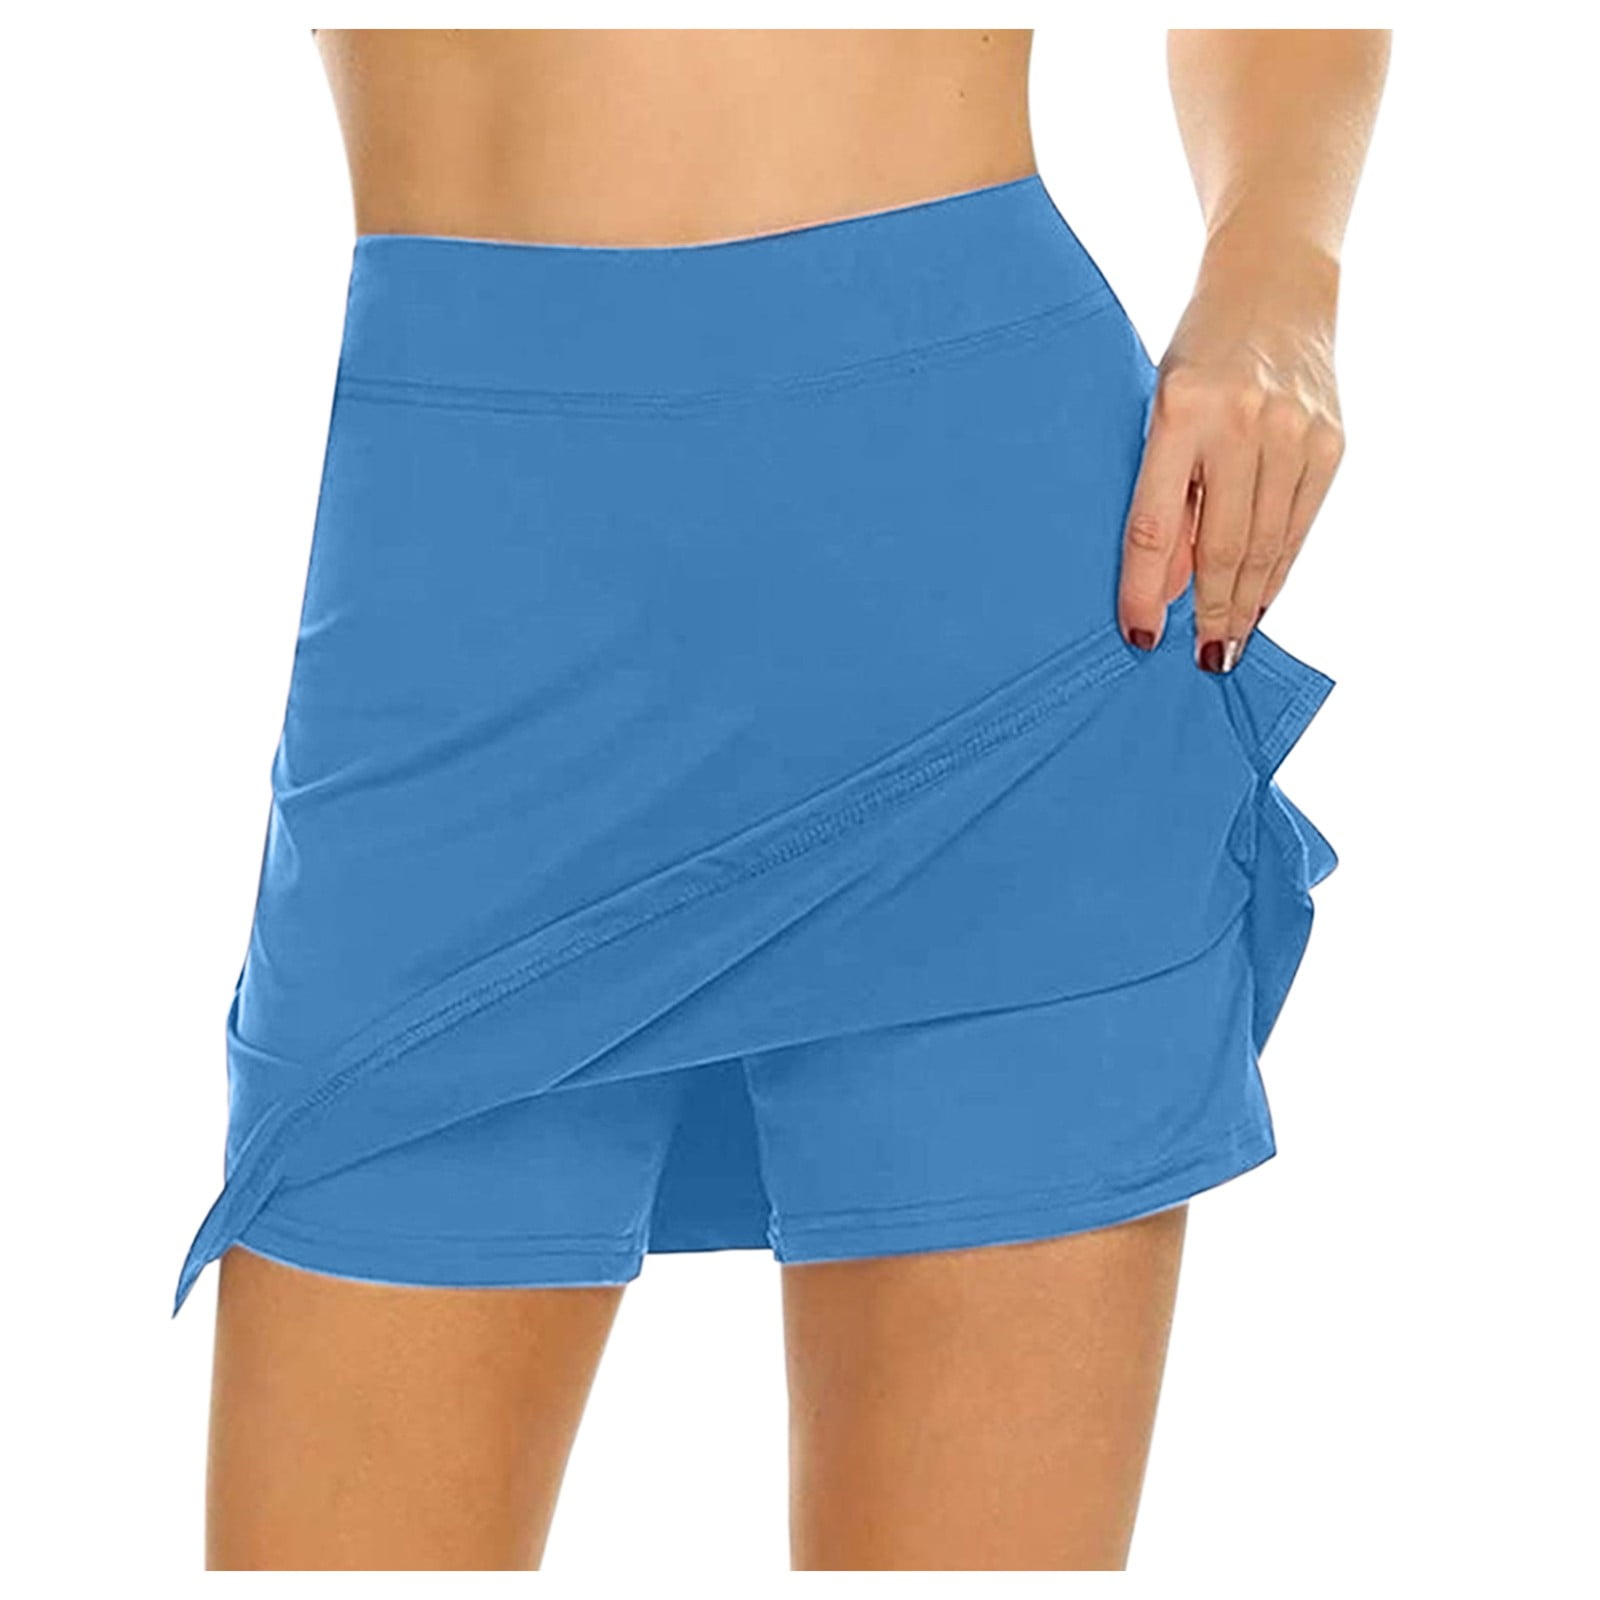 Puffy Skirt For Women Skort Active Women's For Running Performance Skirt  Lightweight Tennis Sport Skirt Skirt Layered Tulle Girls Colorful -  Walmart.com